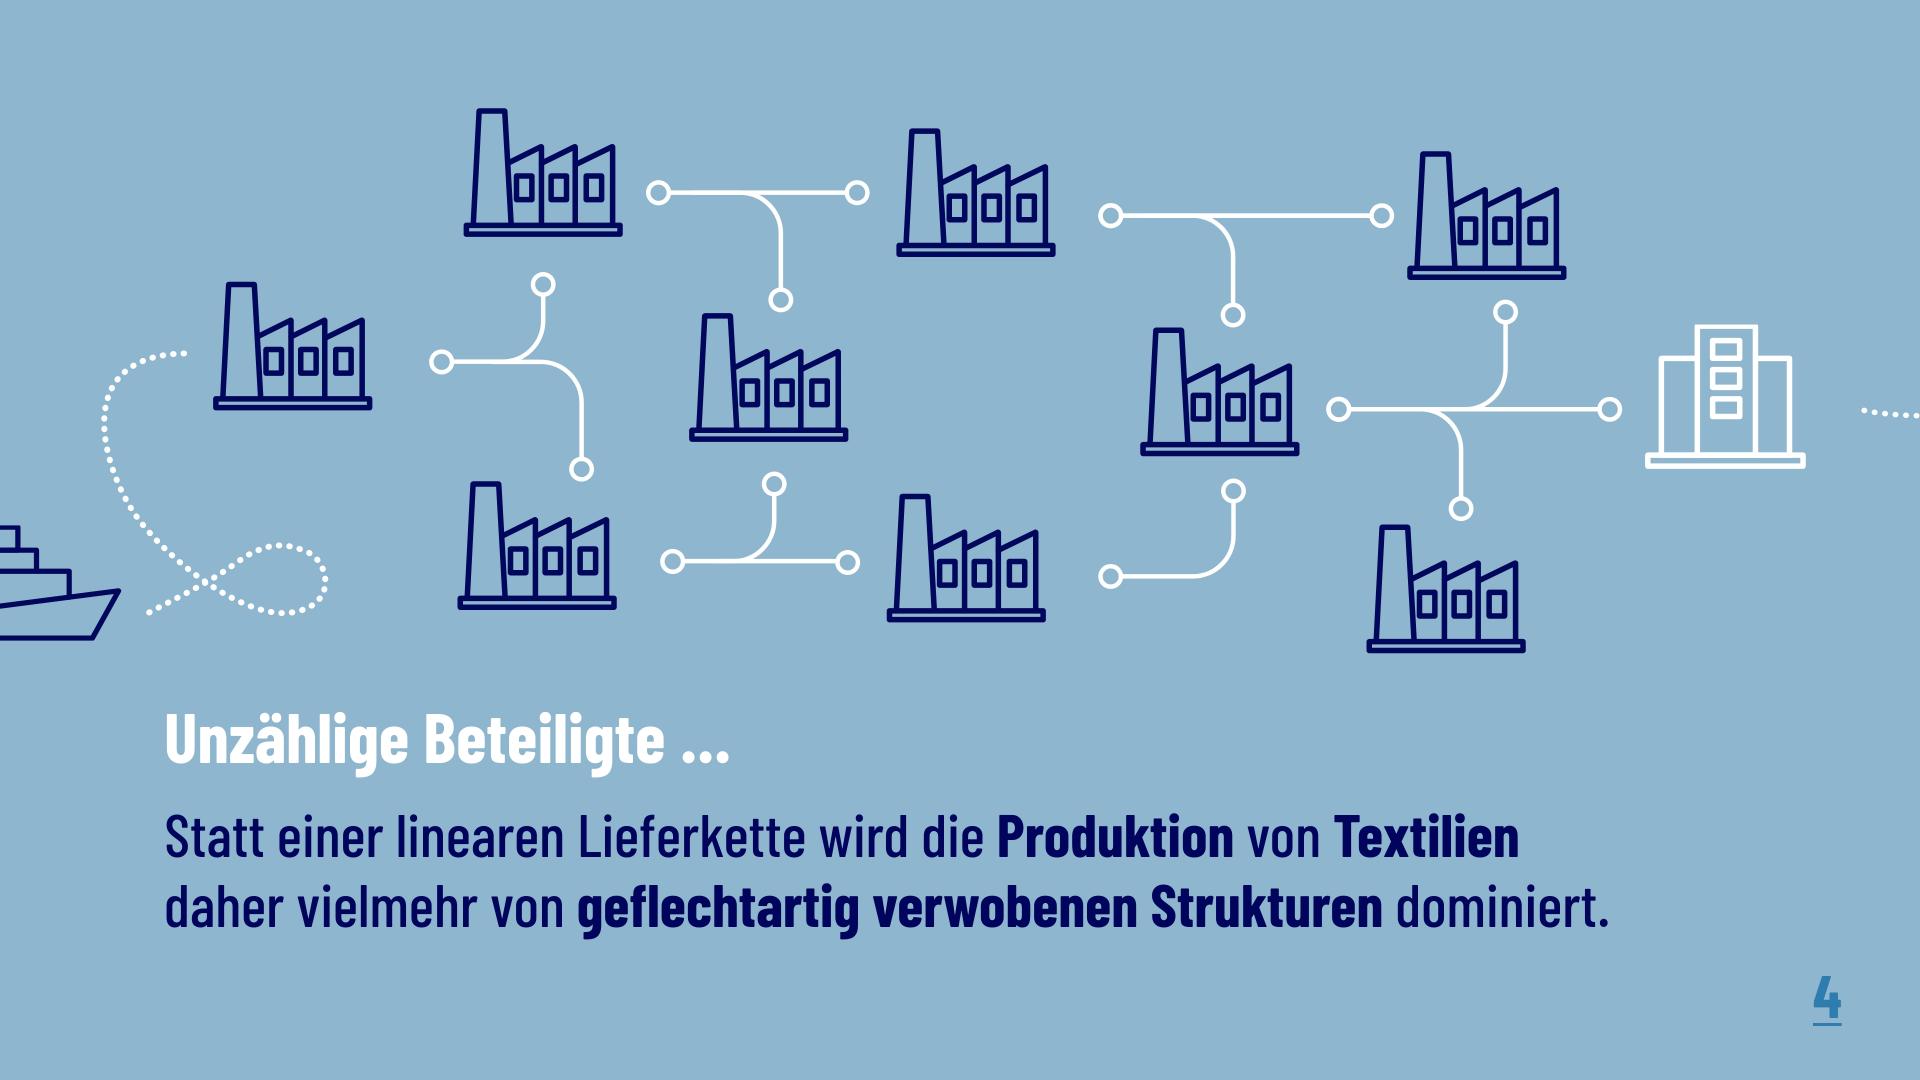 Unzählige Beteiligte...Statt einer linearen Lieferkette wird die Produktion von Textilien daher vielmehr von geflechtartig verwobenen Strukturen dominiert.